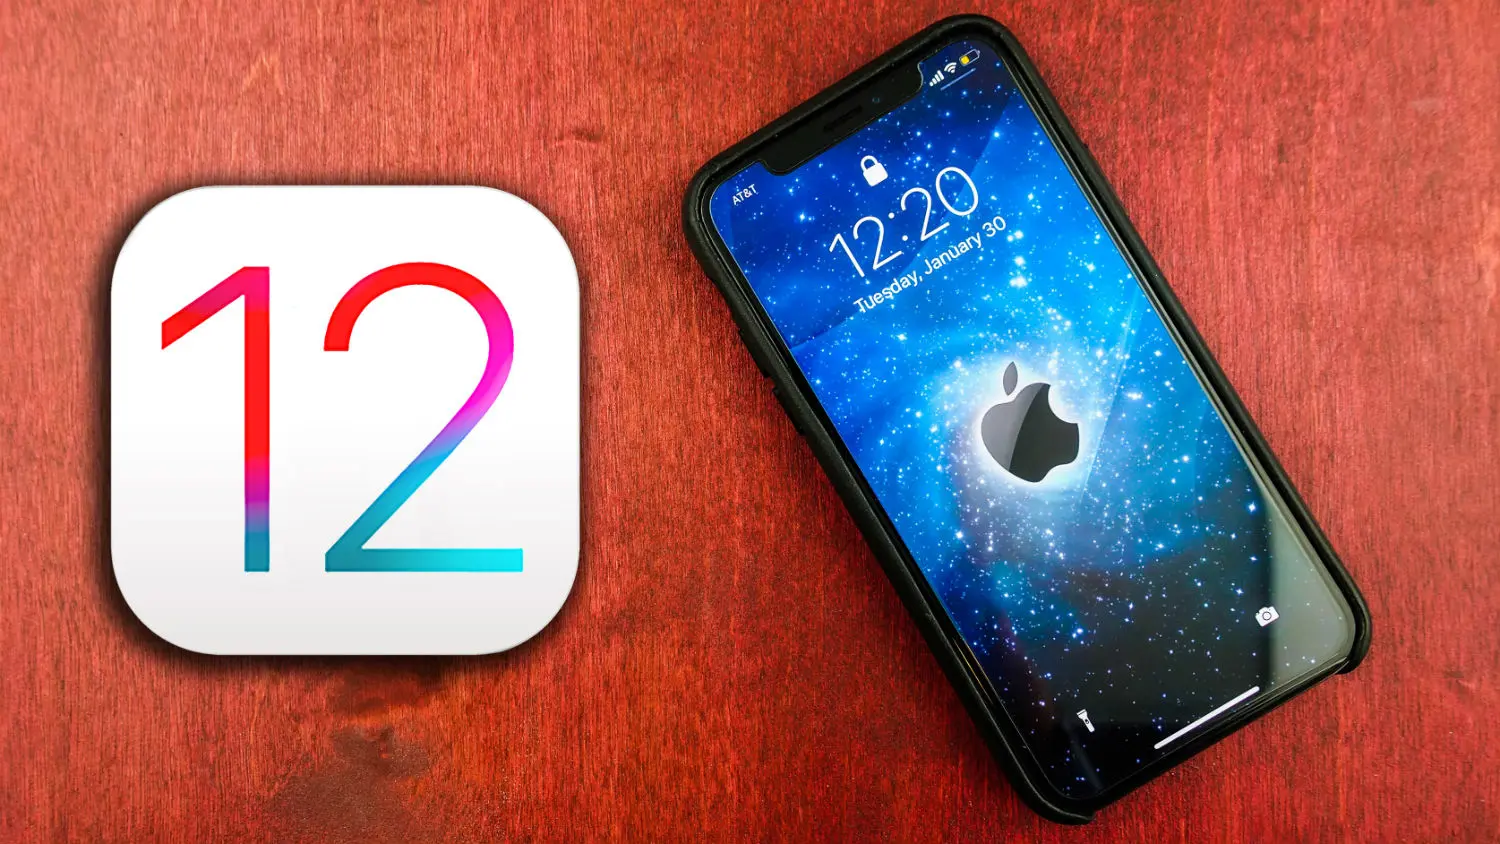 Usuarios de iPhone que actualizaron a iOS 12.1.2 tienen problemas con el Wi-Fi